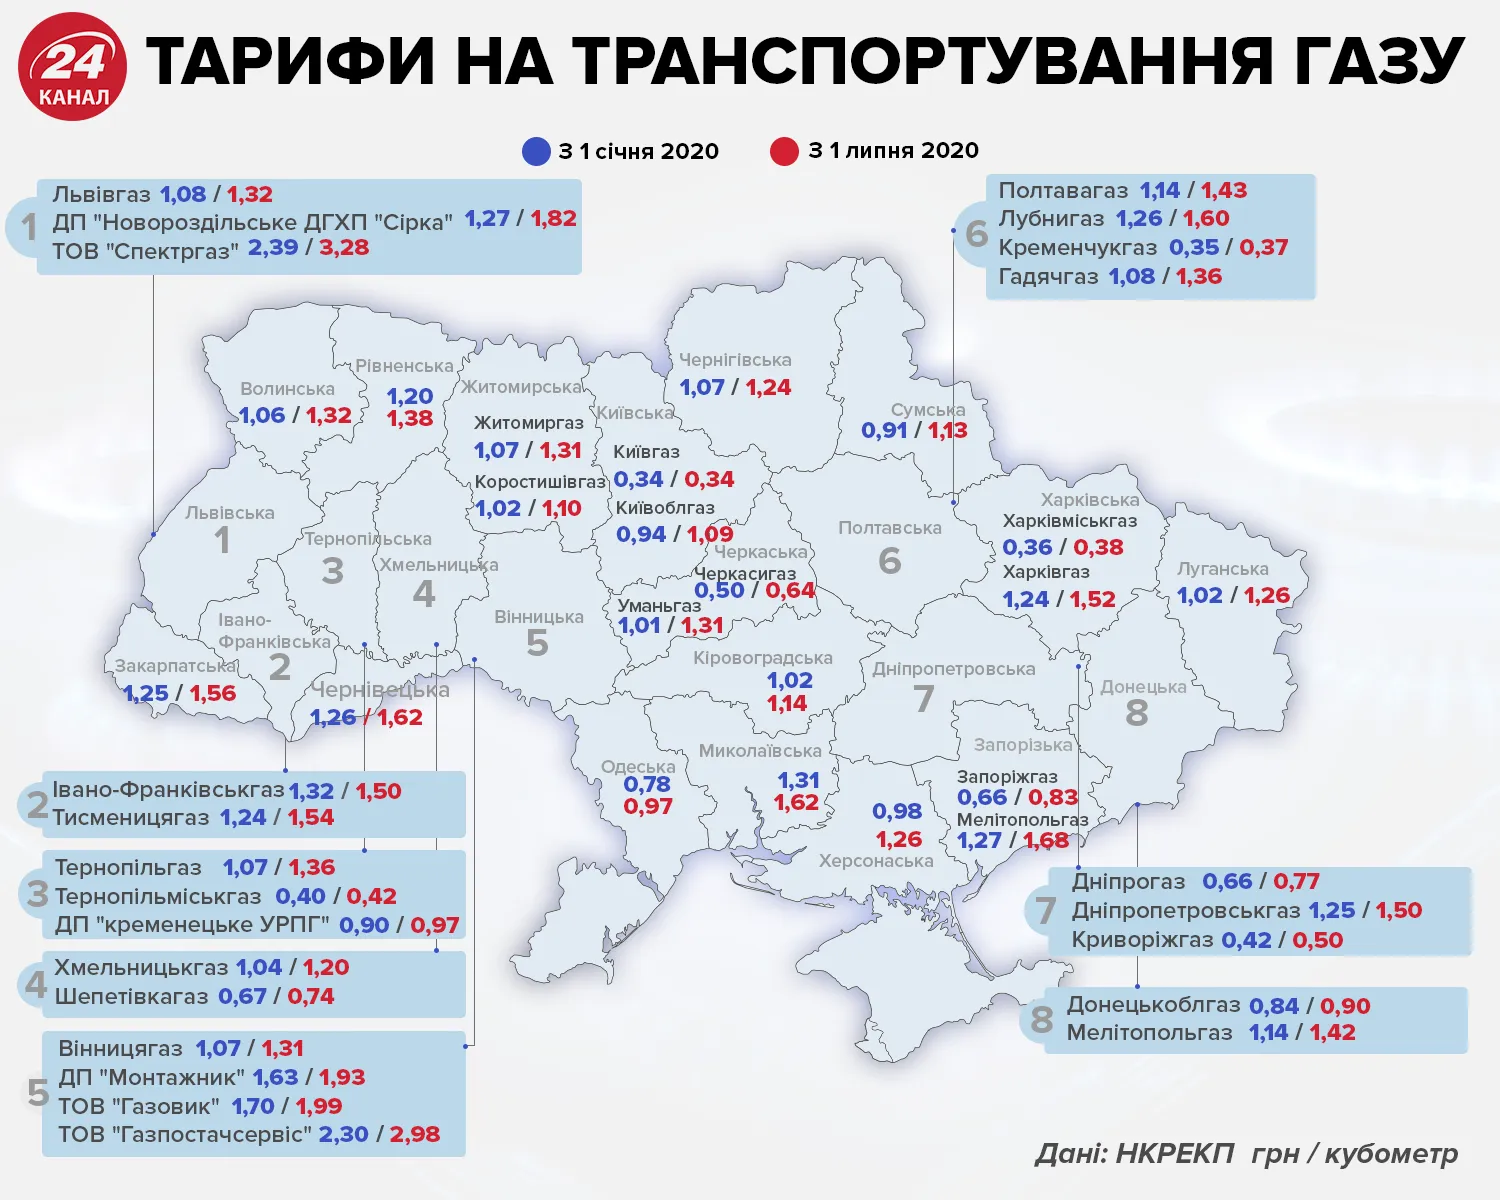 тарифи на транспортування газу в Україні